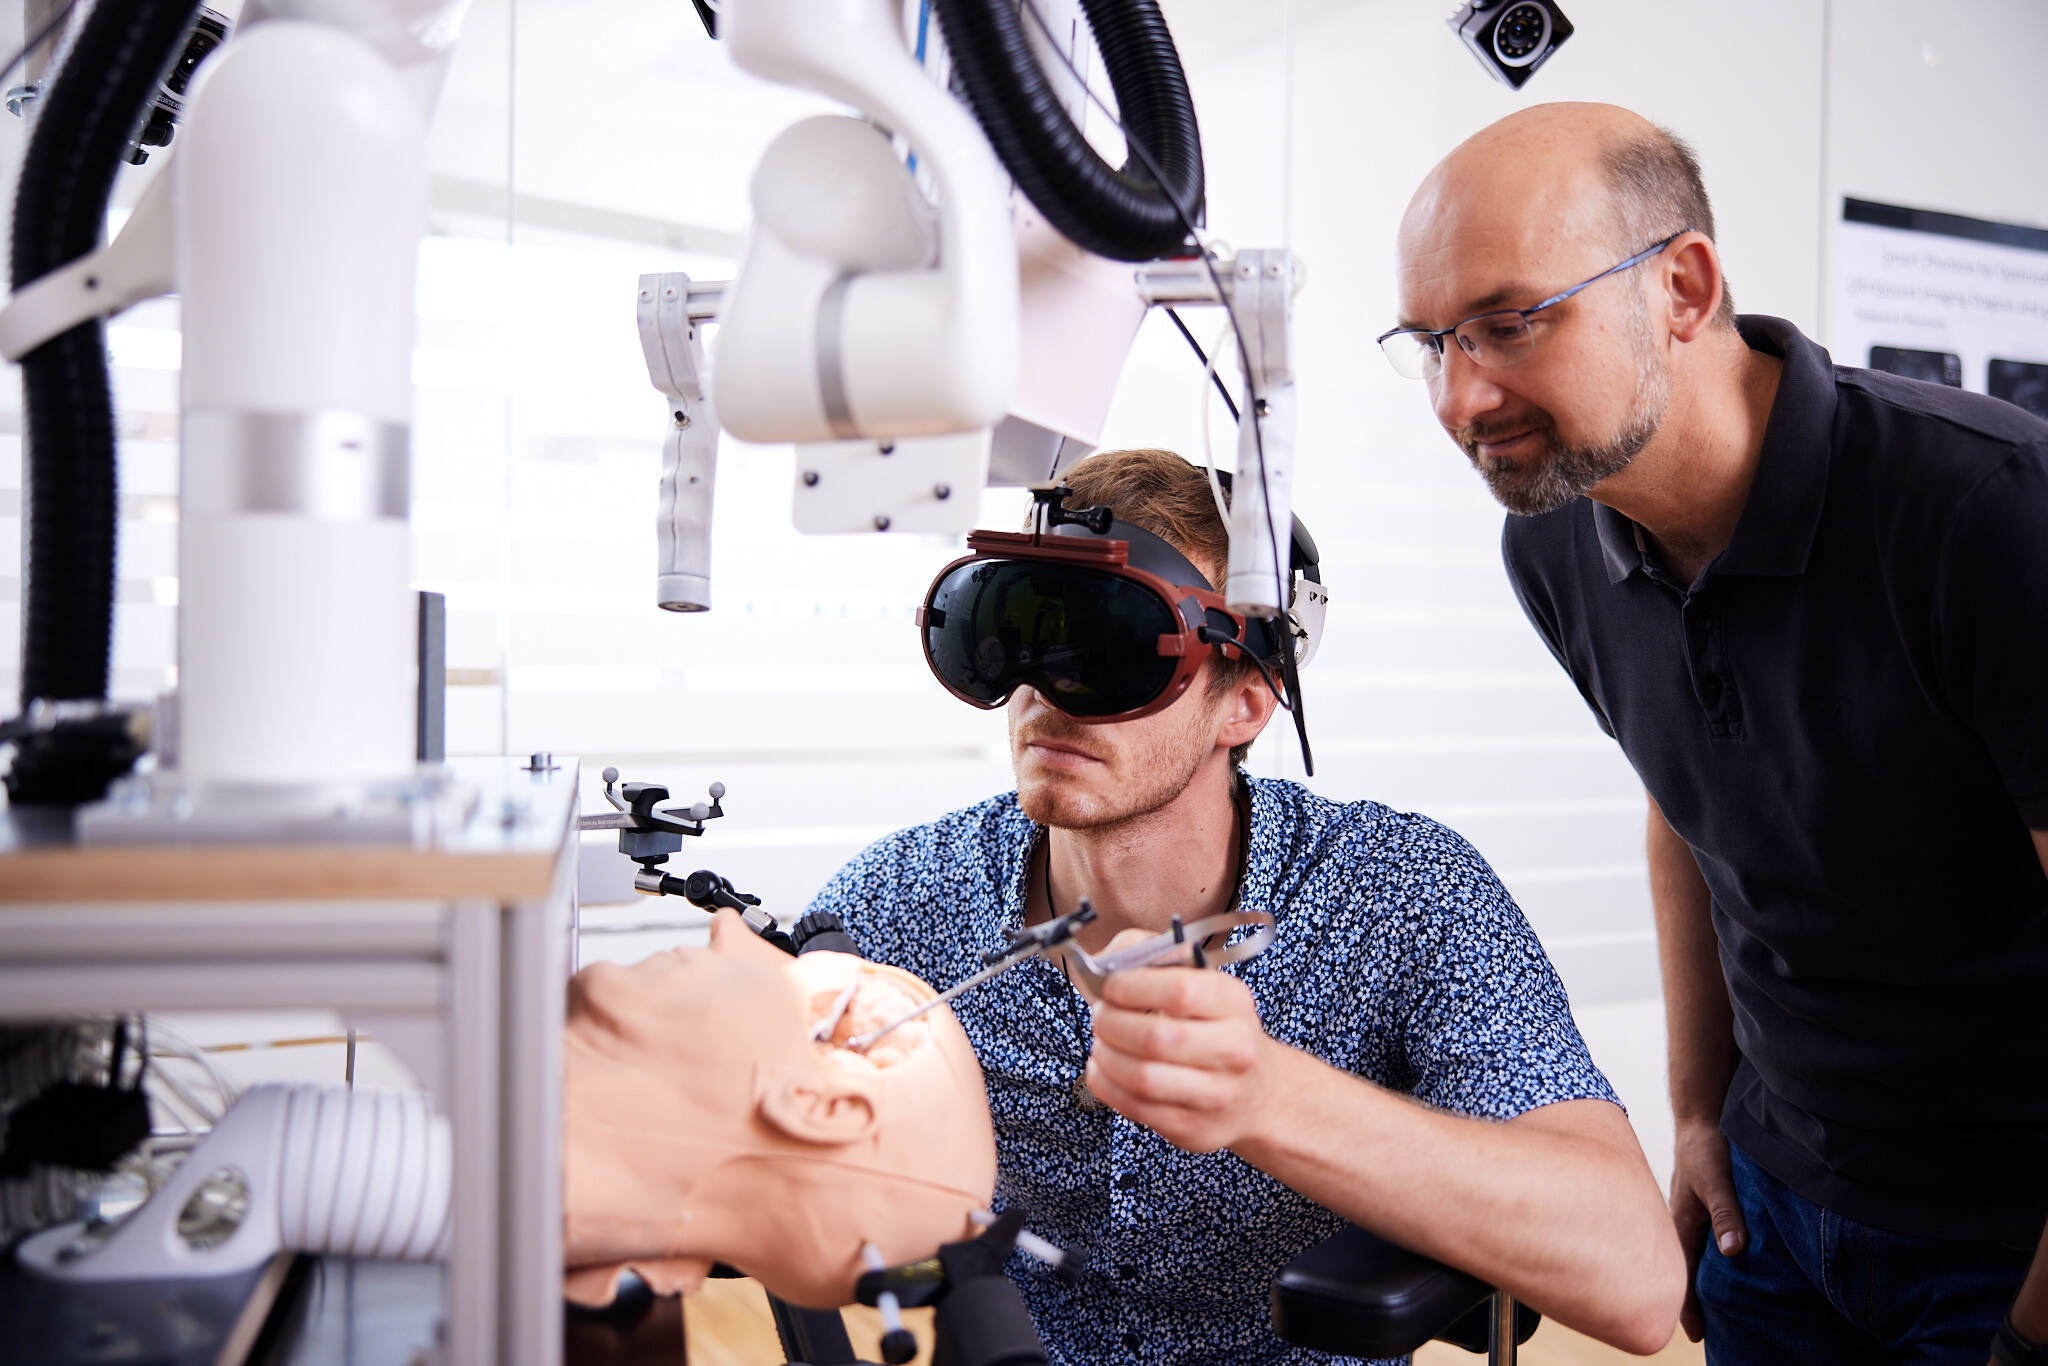 ein junger Student mit einem VR Headset operiert mit technischen Geräten an einem Test-Gehirn, während ein älterer Mann hinter ihm steht